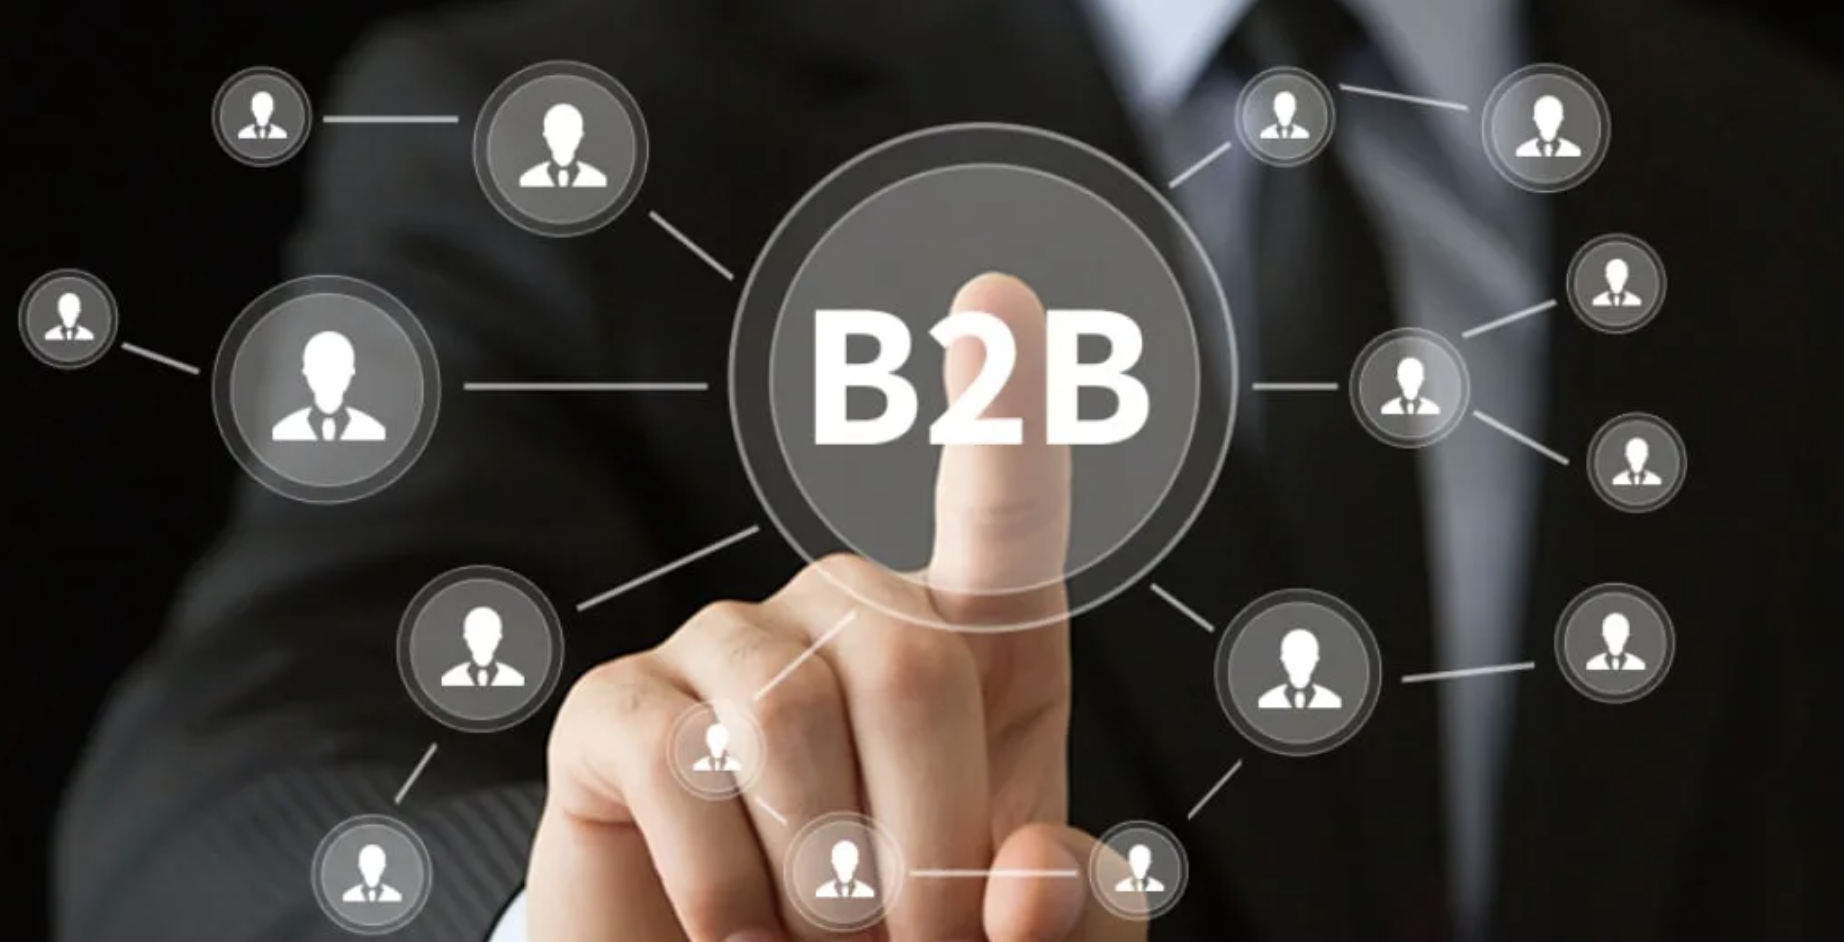 Услуги для b2b. B2b маркетинг. B2b компании. B2b бизнес. Маркетолог в b2b.